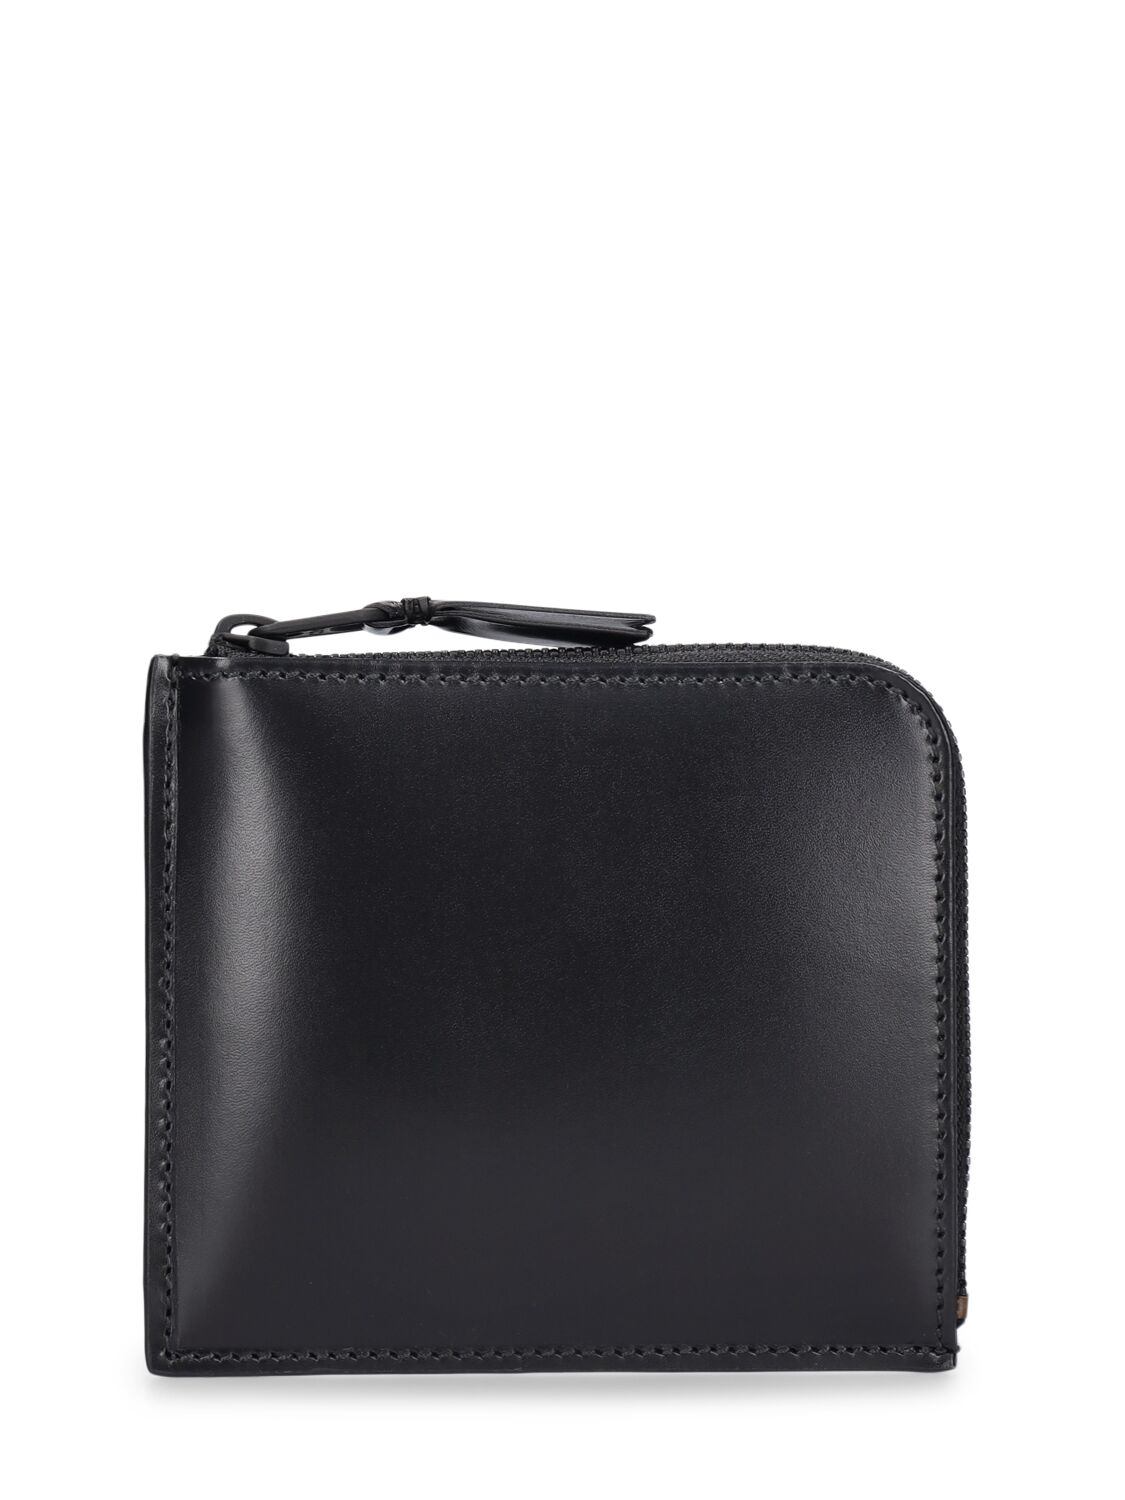 Comme Des Garçons Very Black Leather Wallet